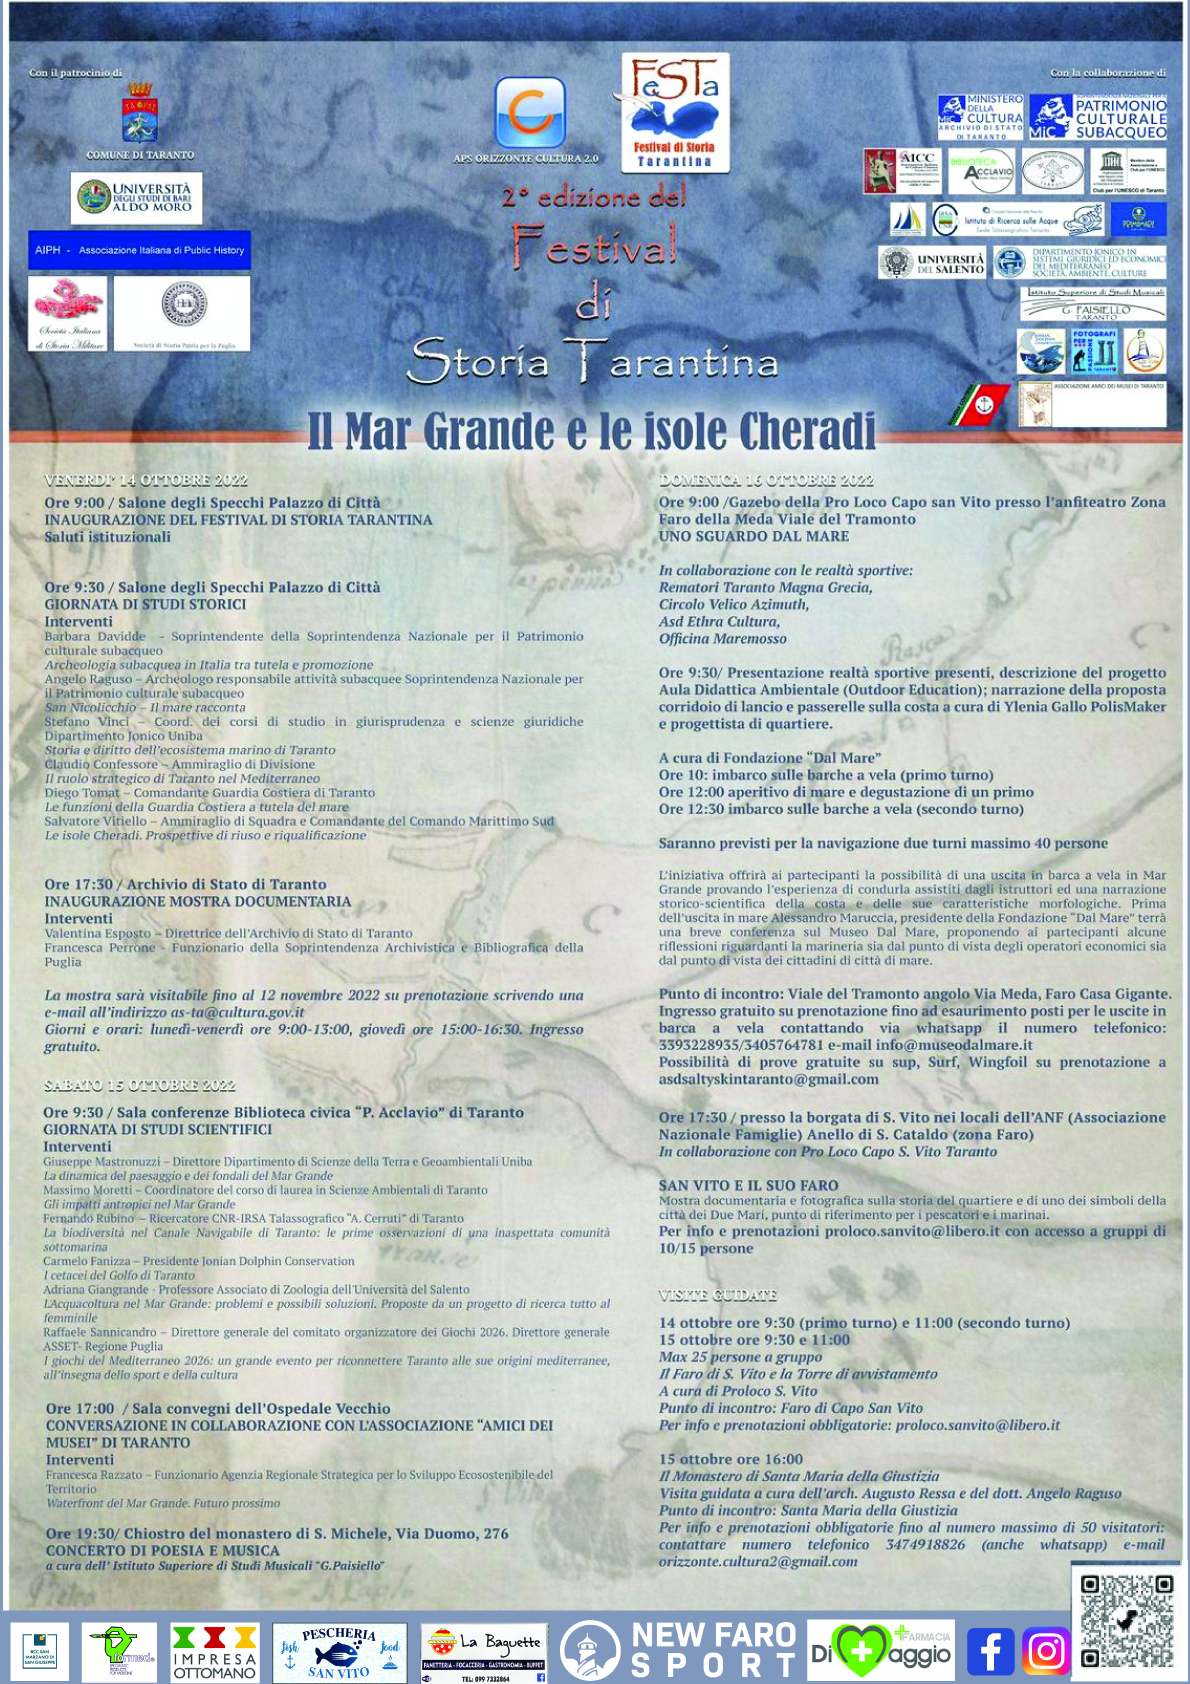 Il Mar Grande e le isole Cheradi. 2° edizione del Festival di storia tarantina